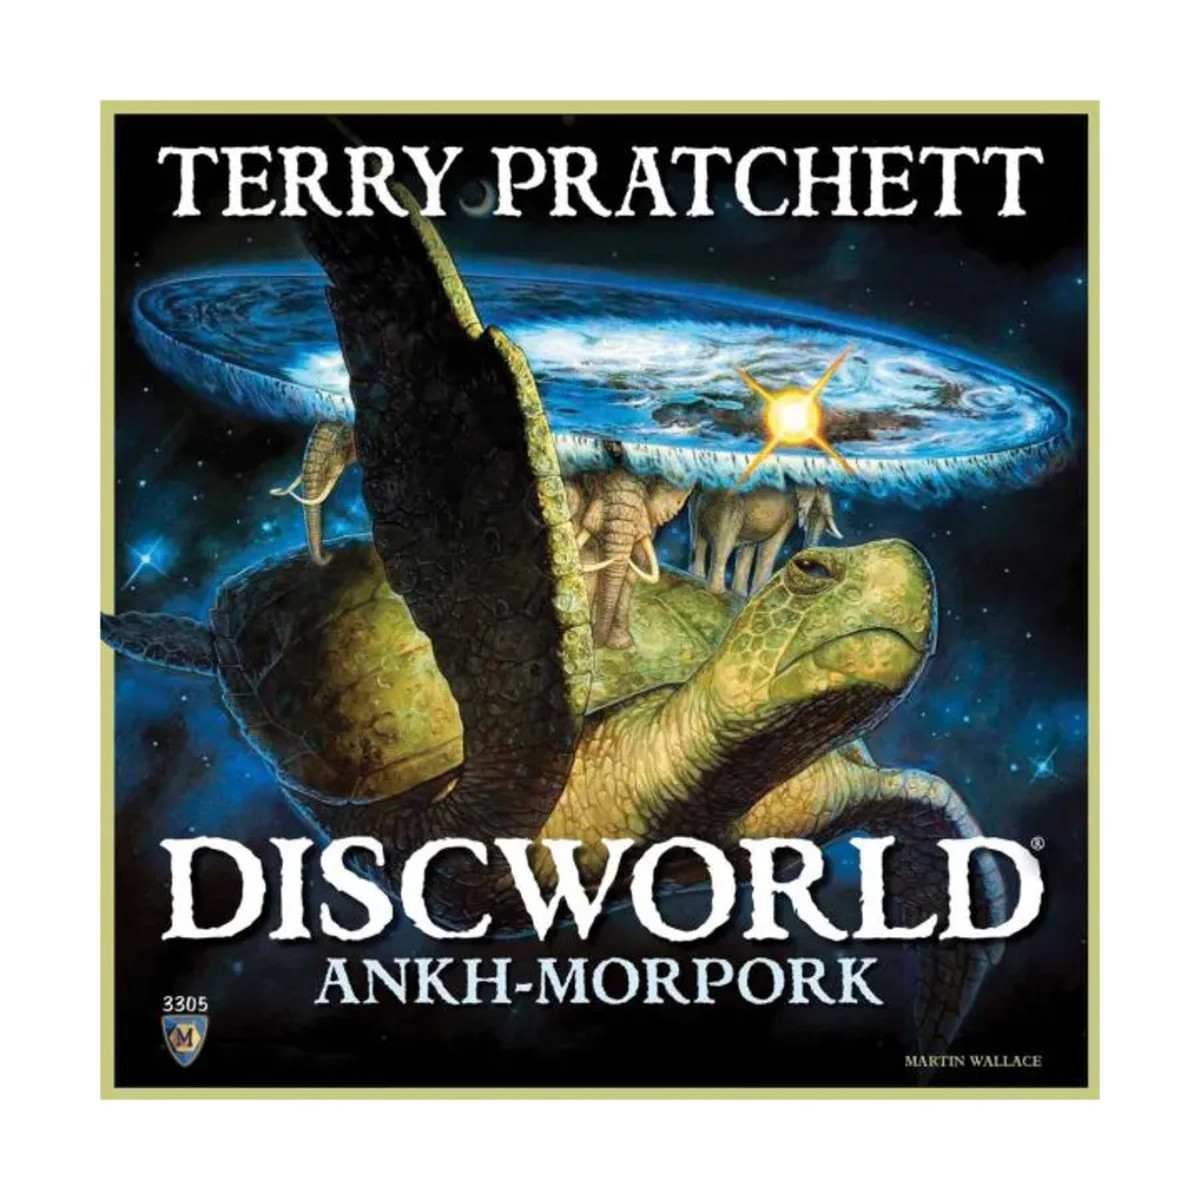 Le coffret du jeu de société Discworld - Ankh-Morpork.  Il porte le nom du jeu en grosses lettres et un rendu du disque est sur la couverture.  Au cas où vous ne le sauriez pas, le Disque est un univers plat sur le dos de quelques éléphants au sommet d'une tortue géante.